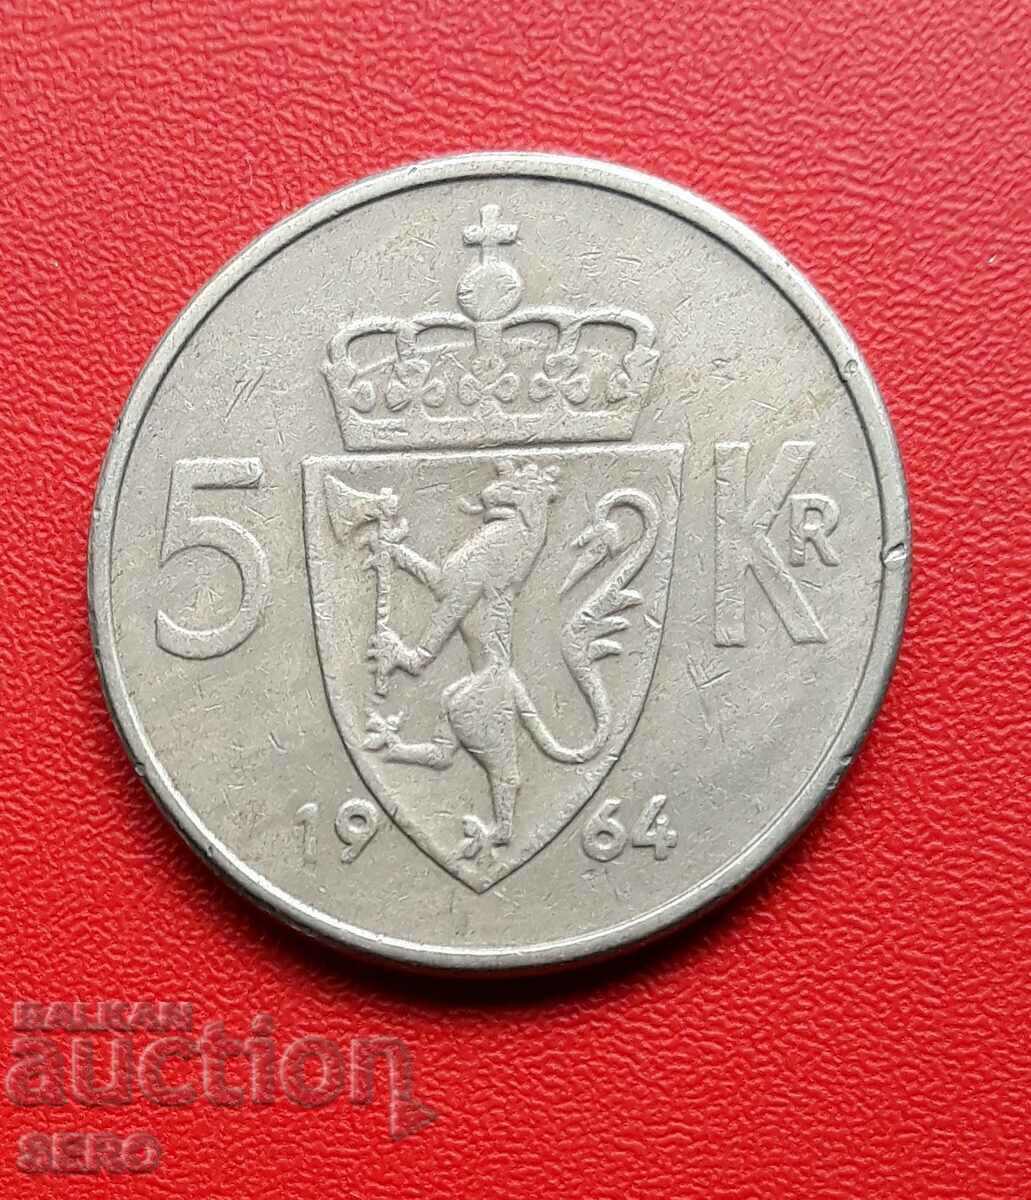 Norway-5 kroner 1964